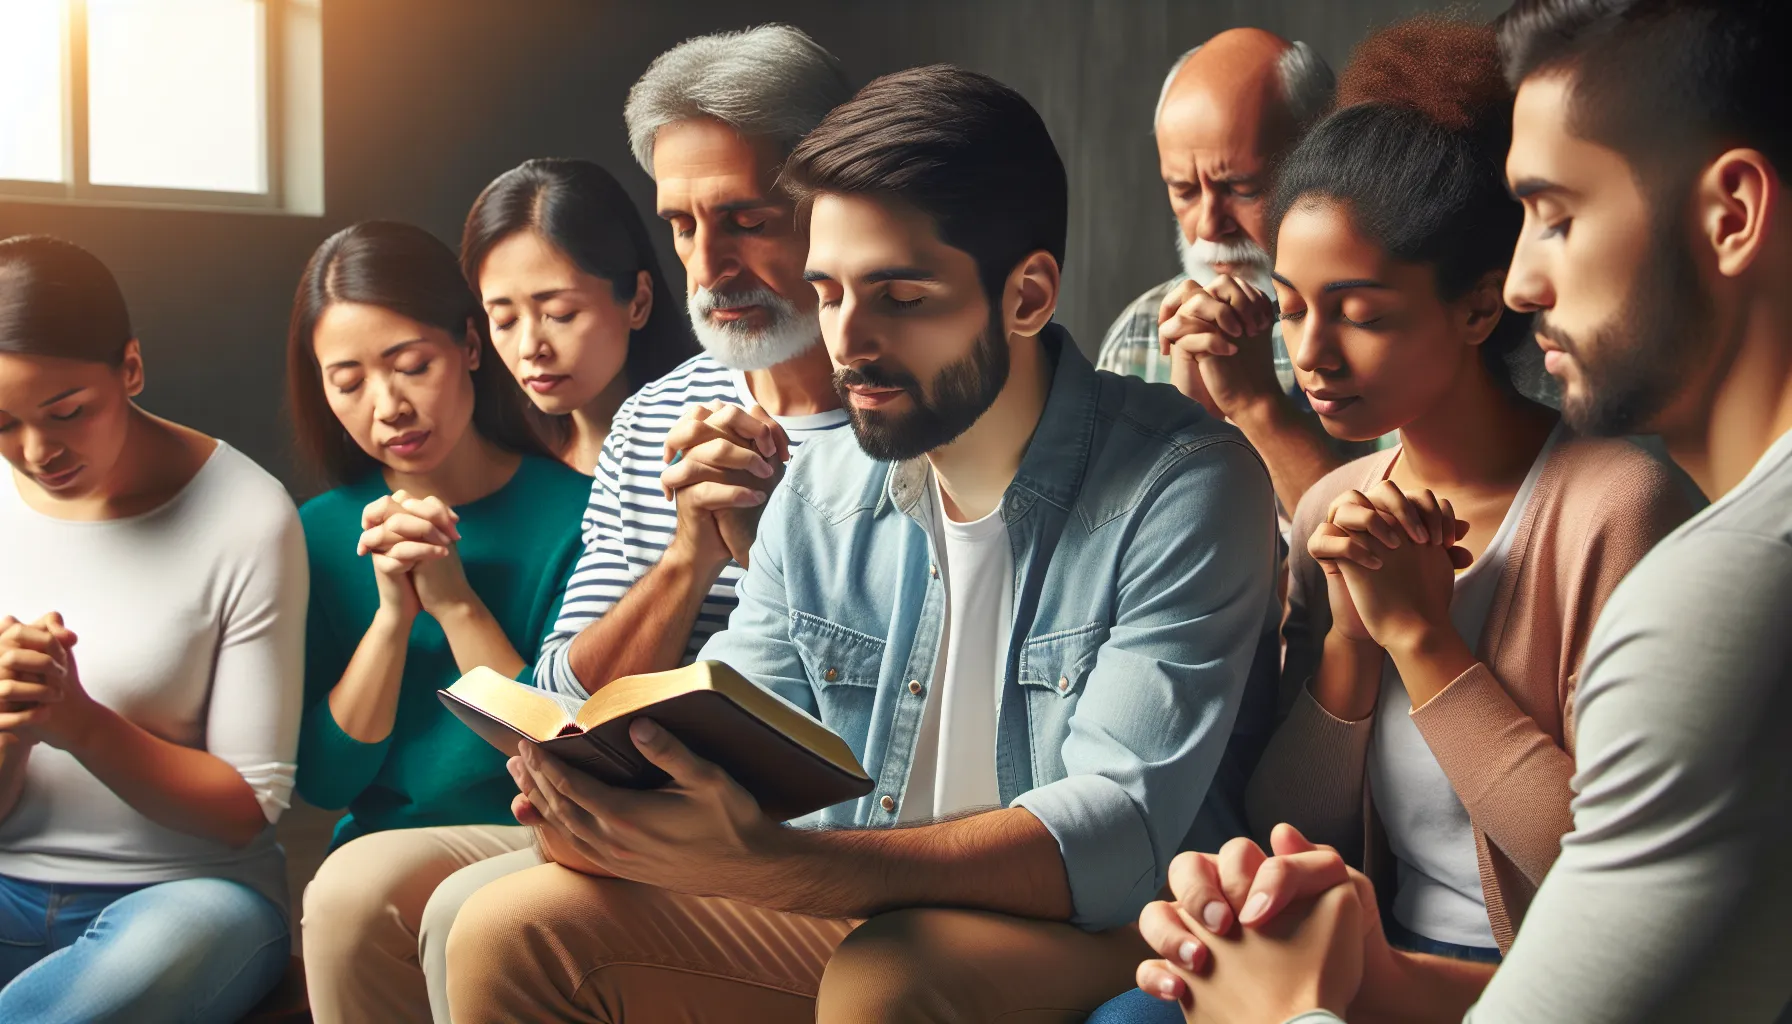 Imagen de un grupo de personas participando en un estudio bíblico y orando juntos